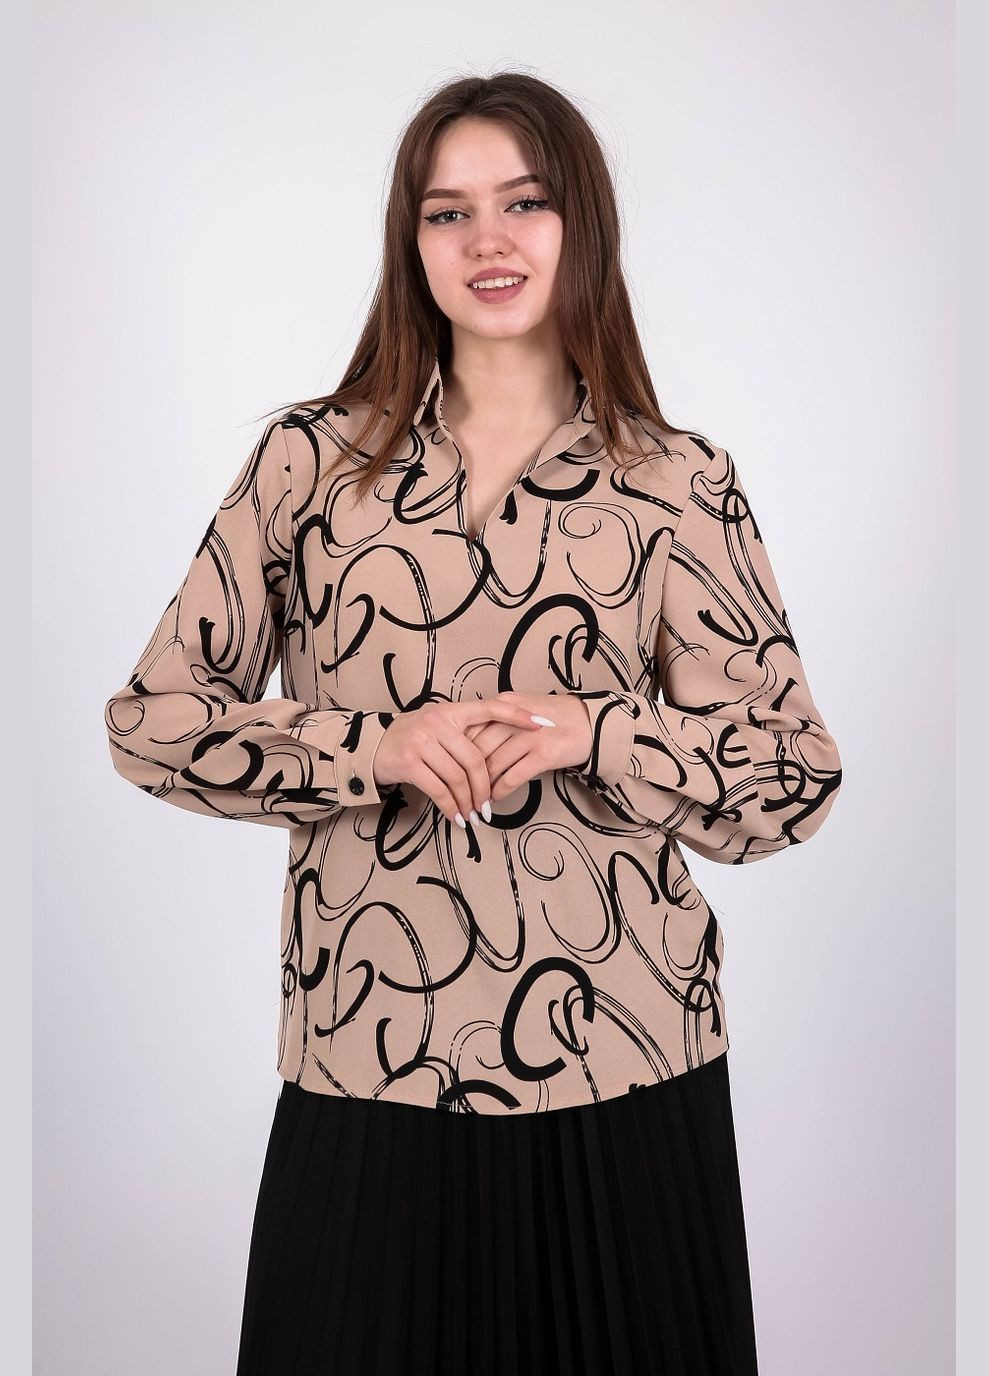 Світло-коричнева блузка жіноча 053 малюнок креп капучино Актуаль